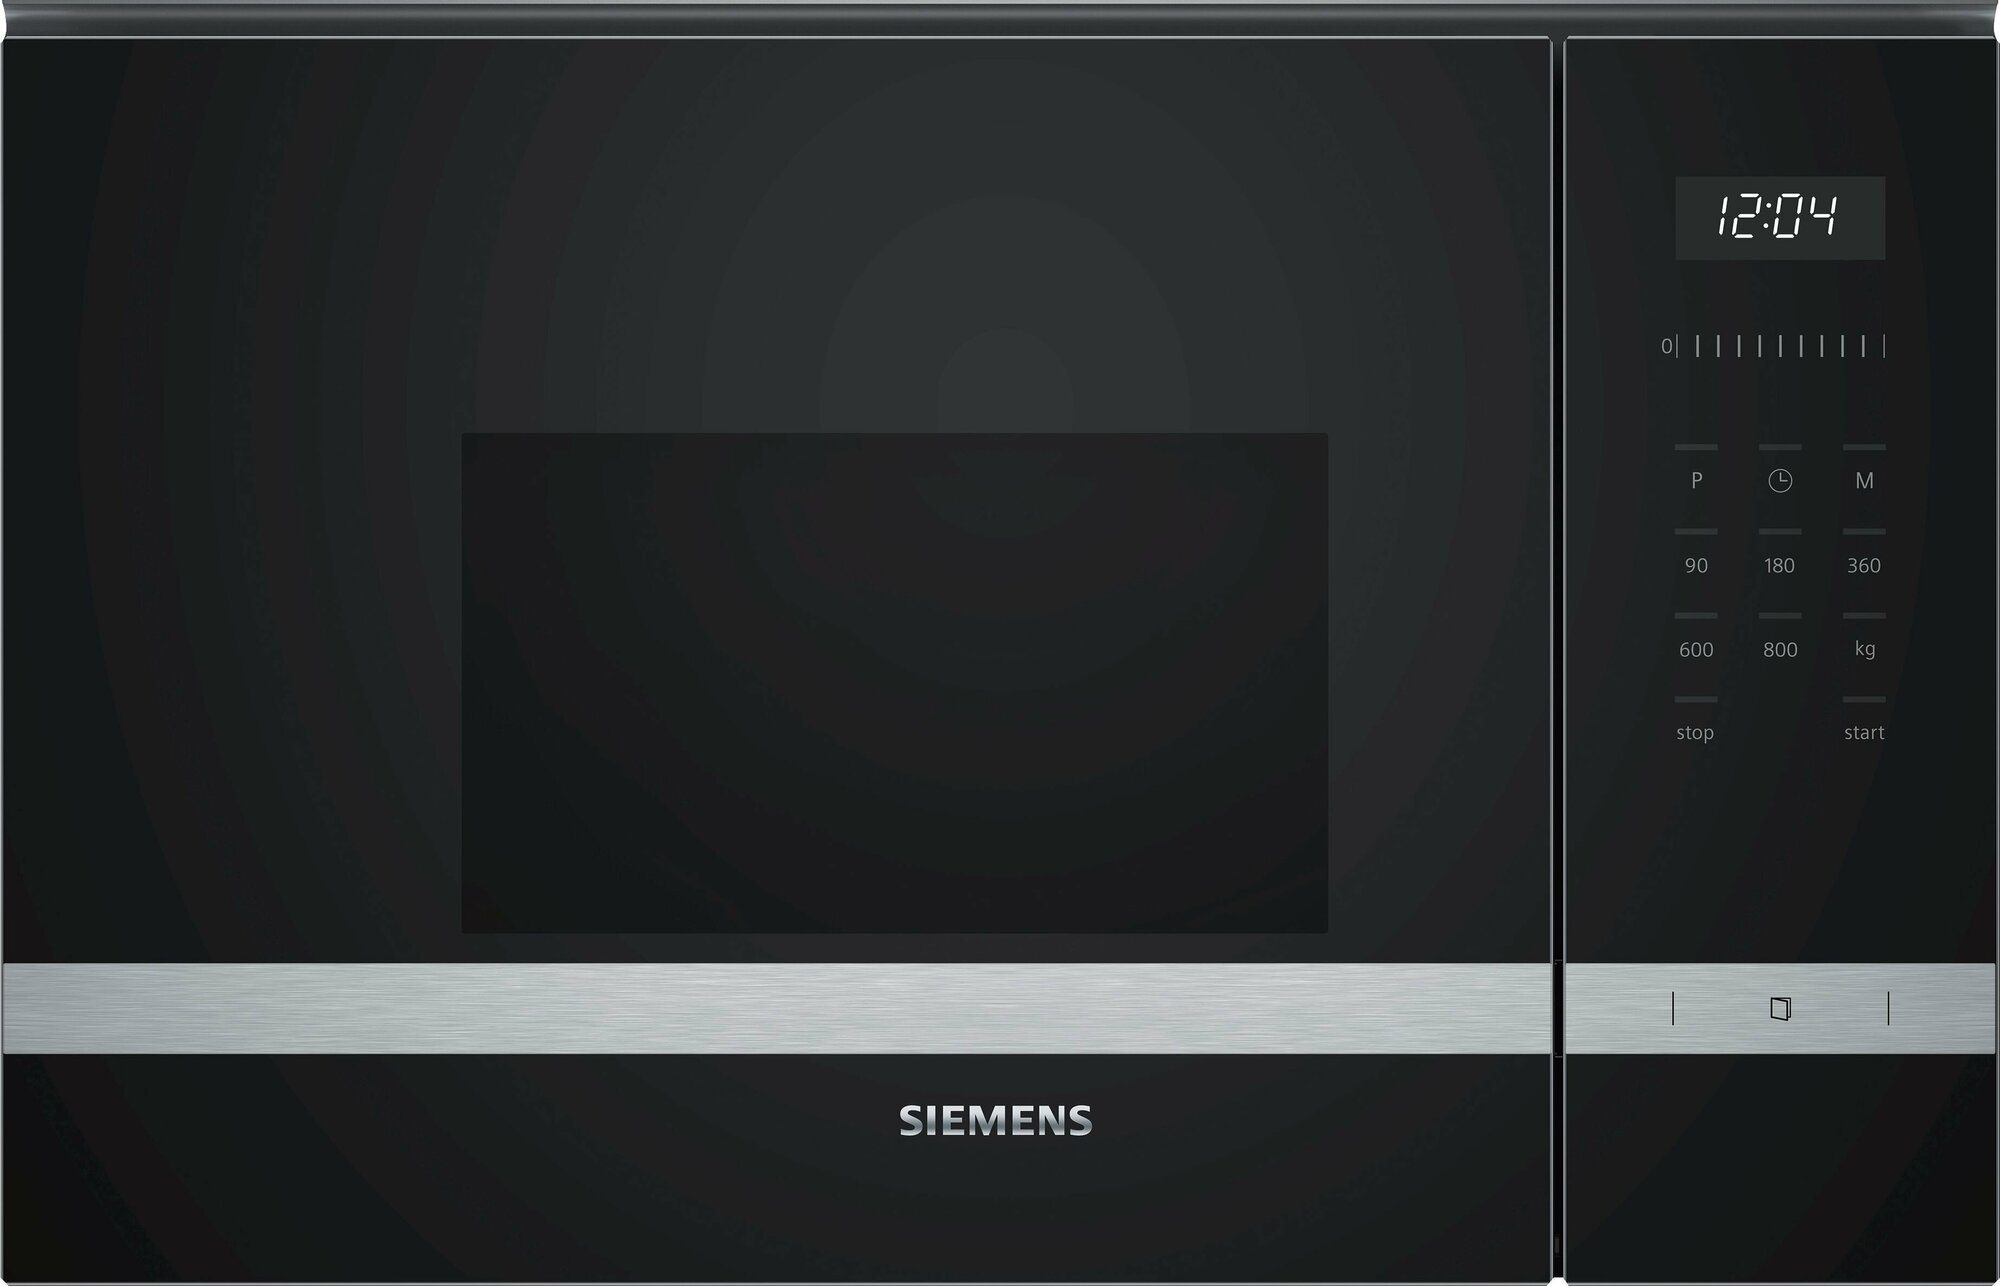 Микроволновая печь Siemens Встраиваемая микроволновая печь Siemens/ розничный эксклюзив! 20л 800Вт цвет: черный